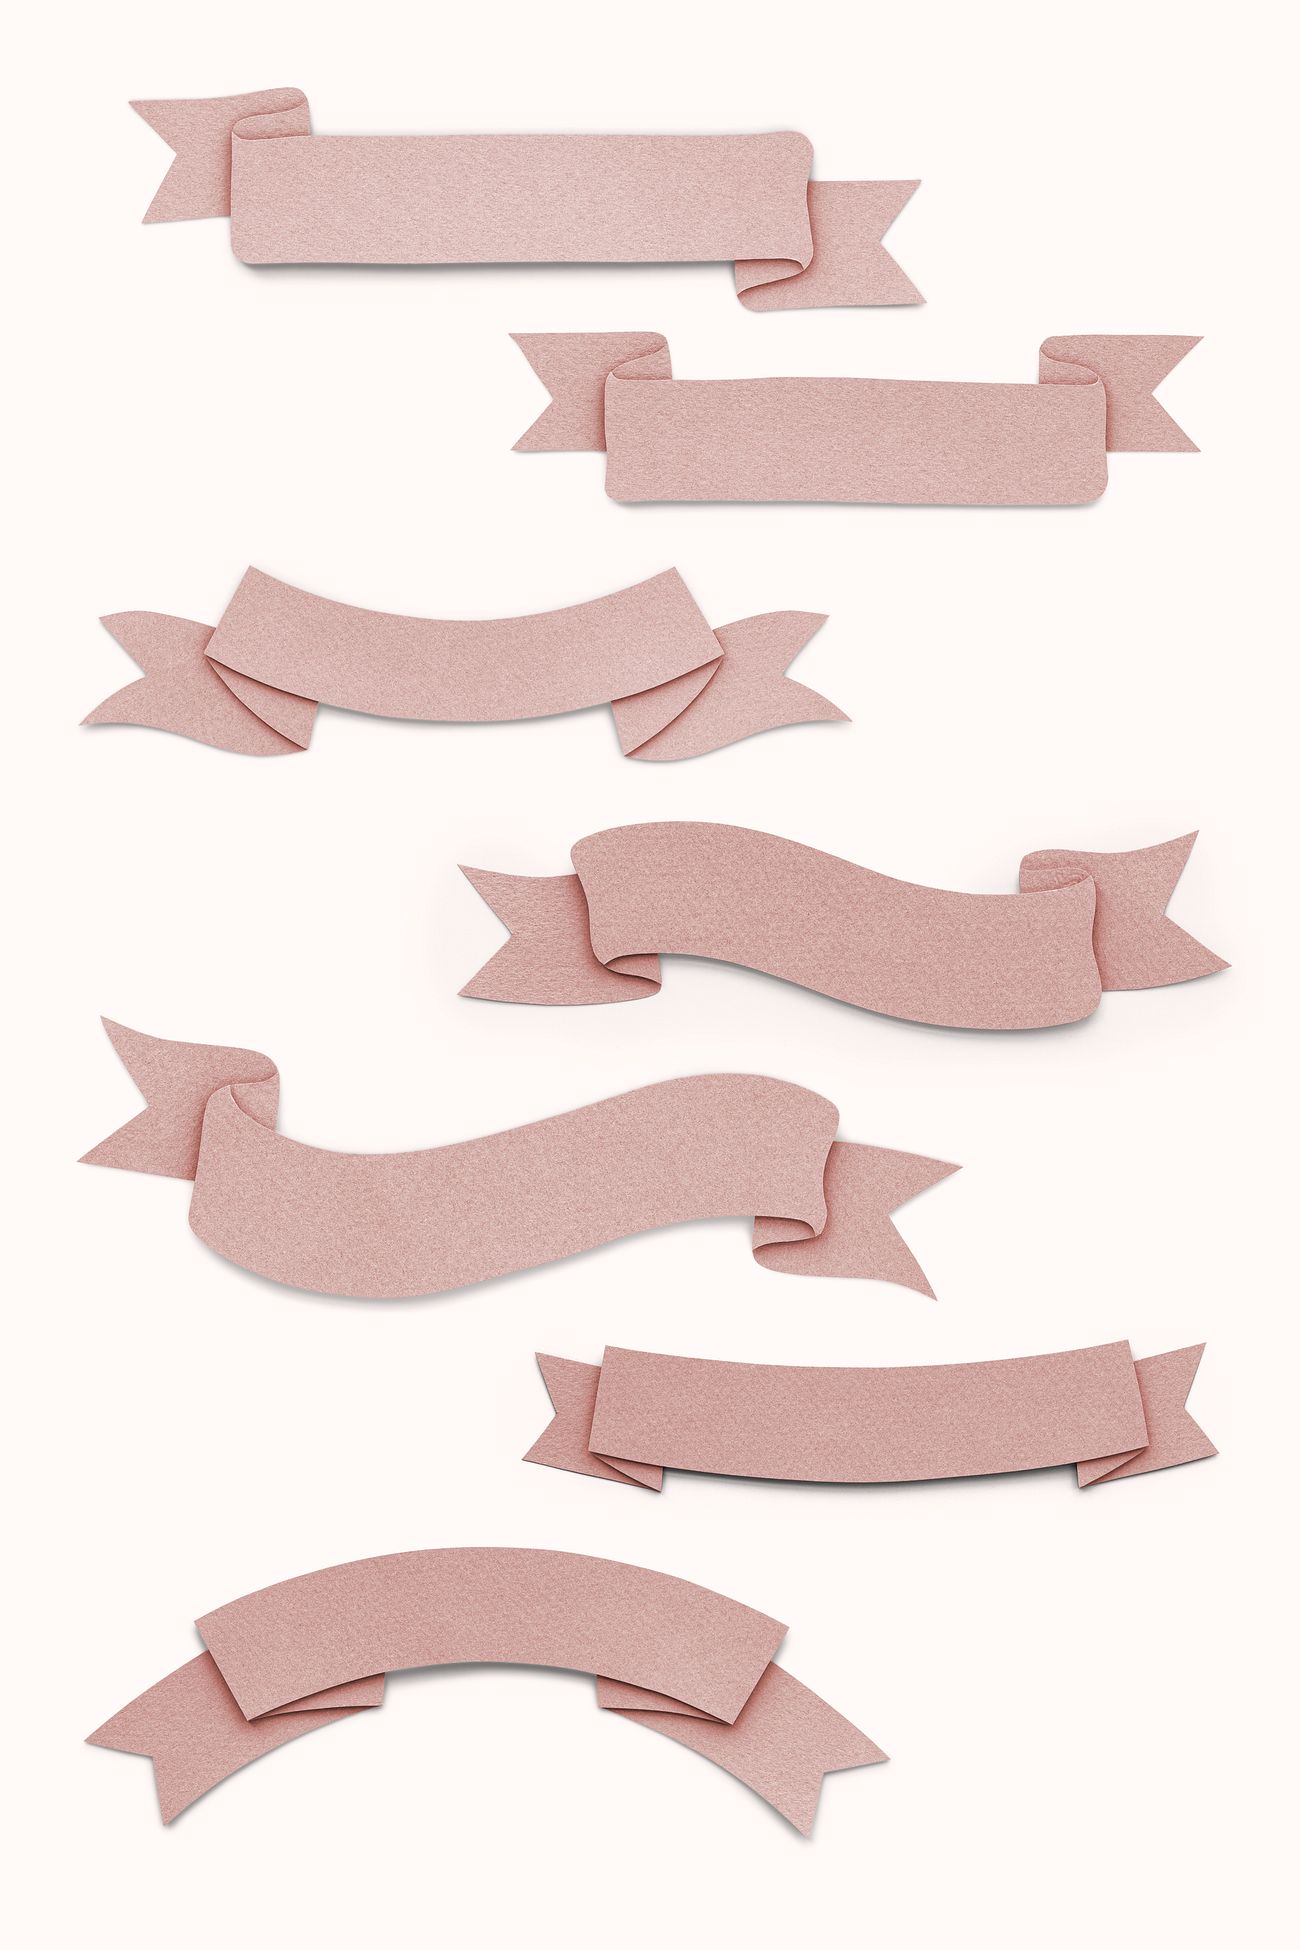 Paper craft ribbon set | Royalty free psd mockup - 1202535